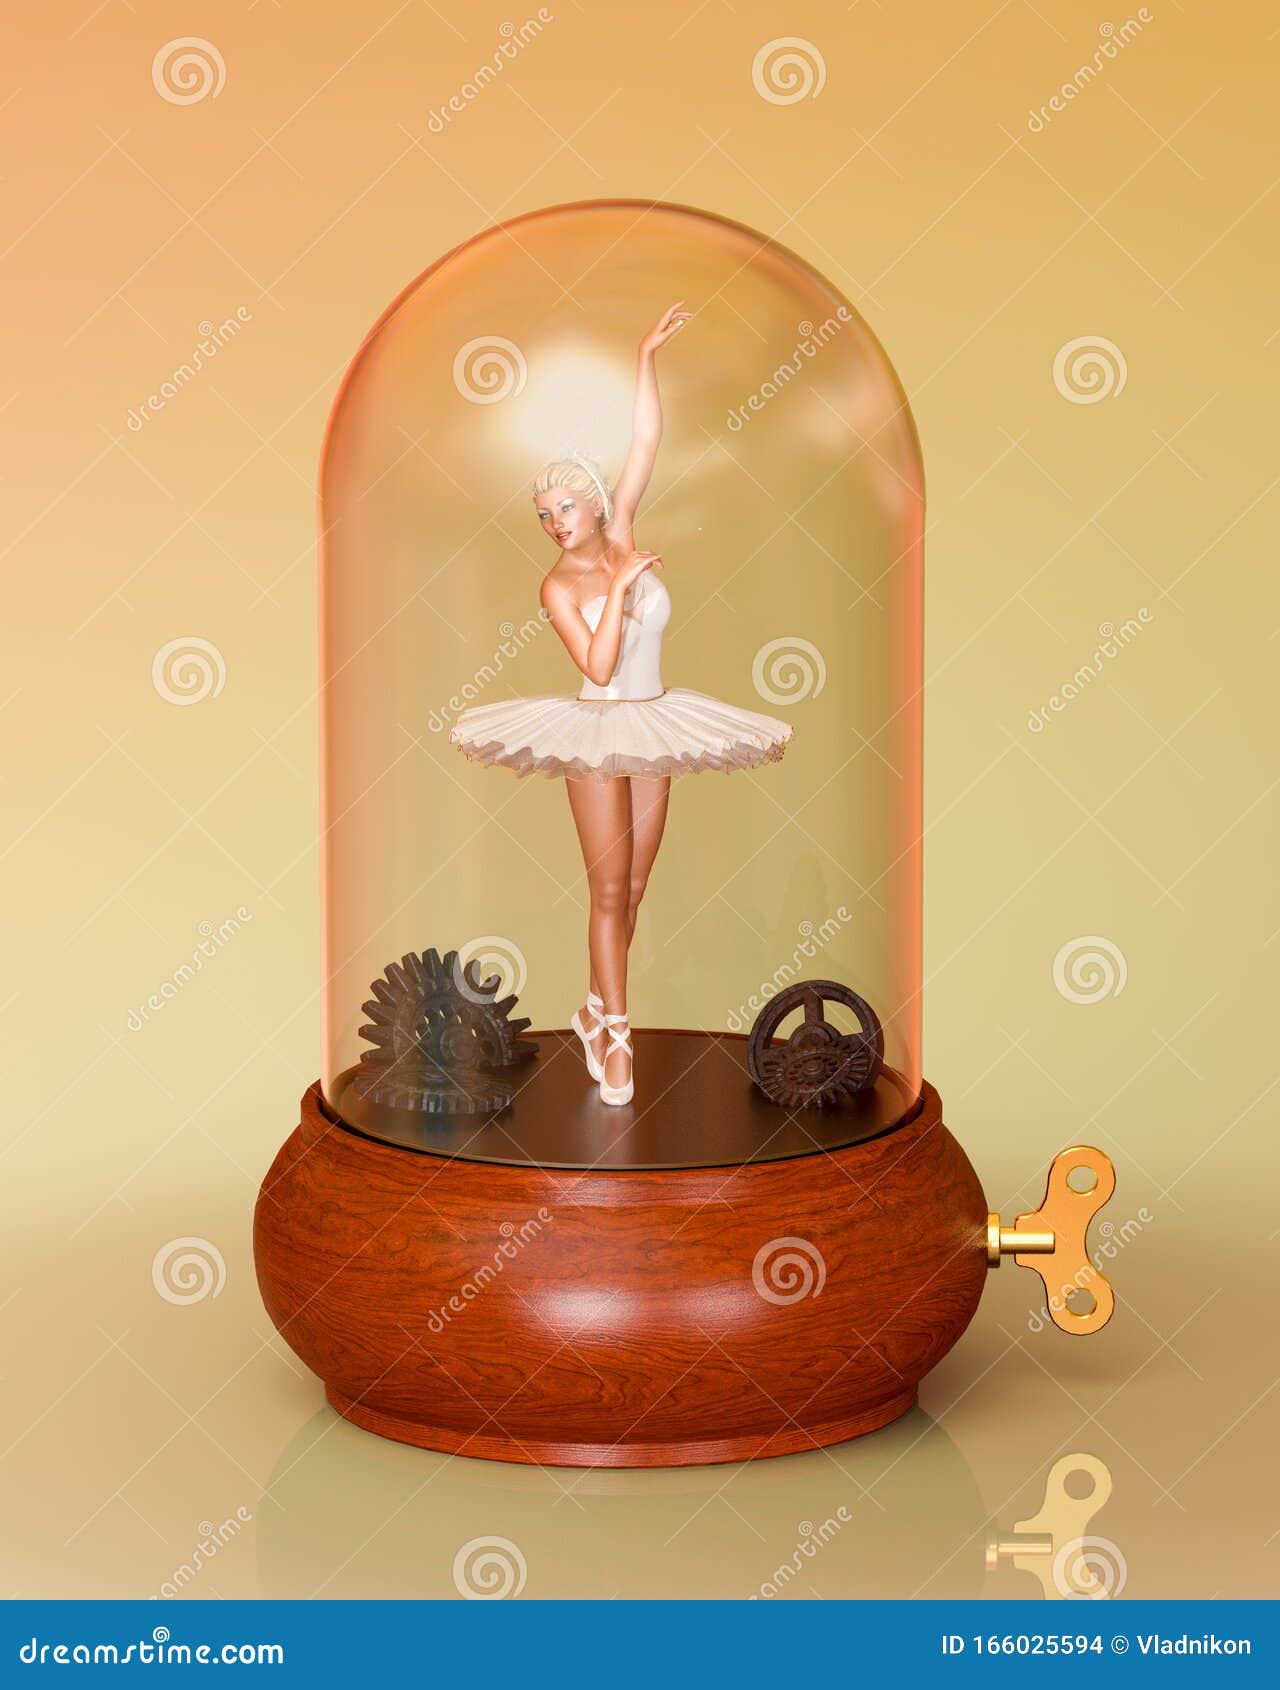 klart sandwich Susteen 3D Ballerina Tutu in Music Box Stock Illustration - Illustration of dance,  beautiful: 166025594